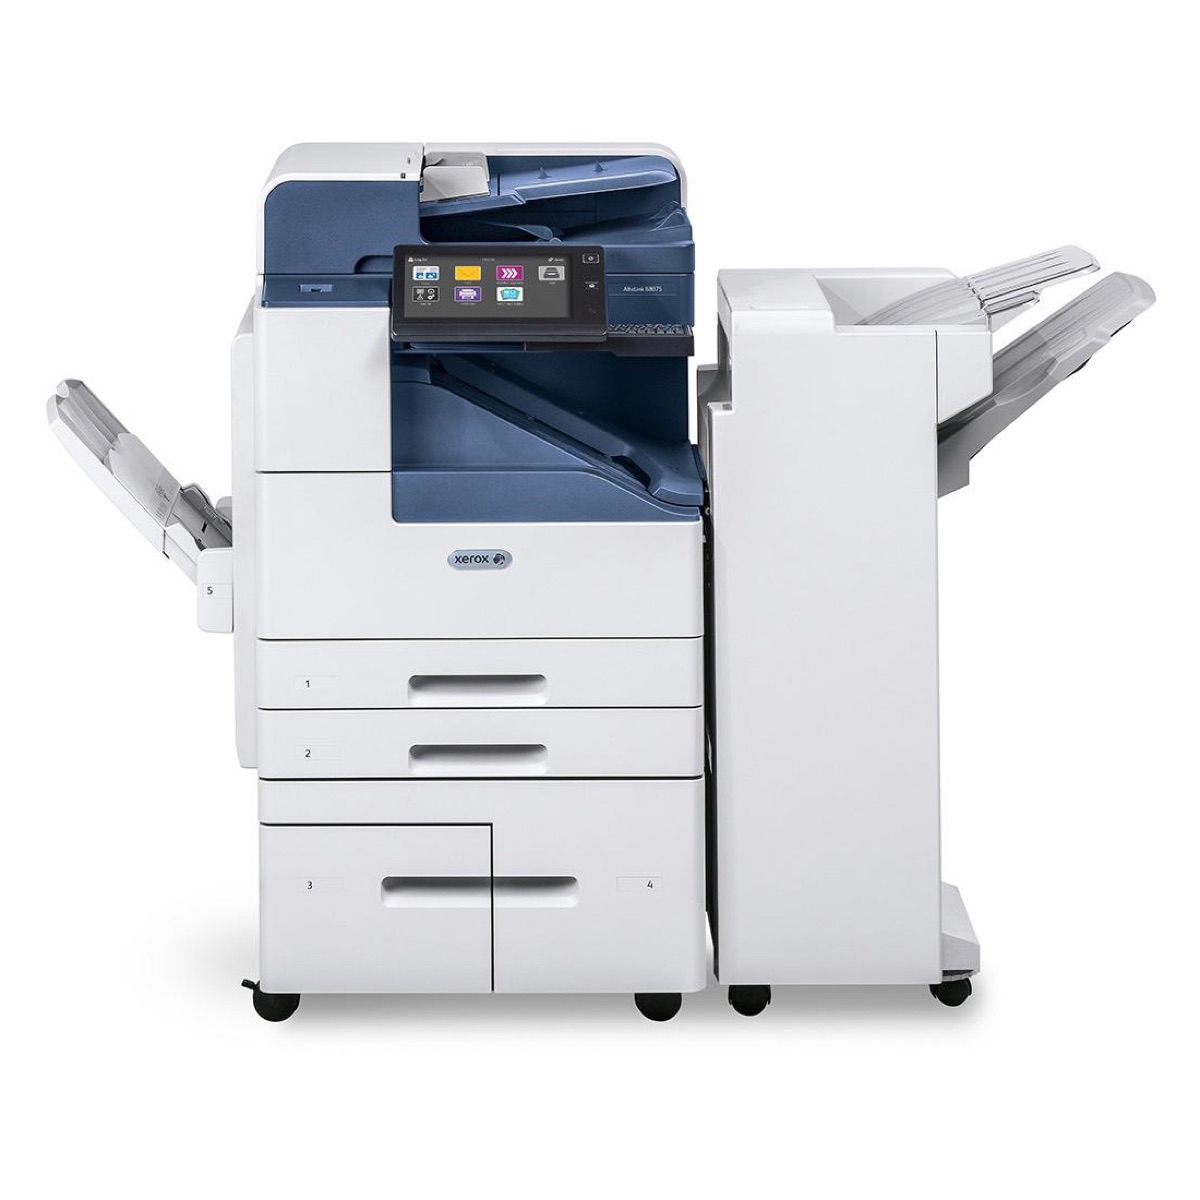 Xerox Copiers:  The Xerox AltaLink B8065/H2 Copier